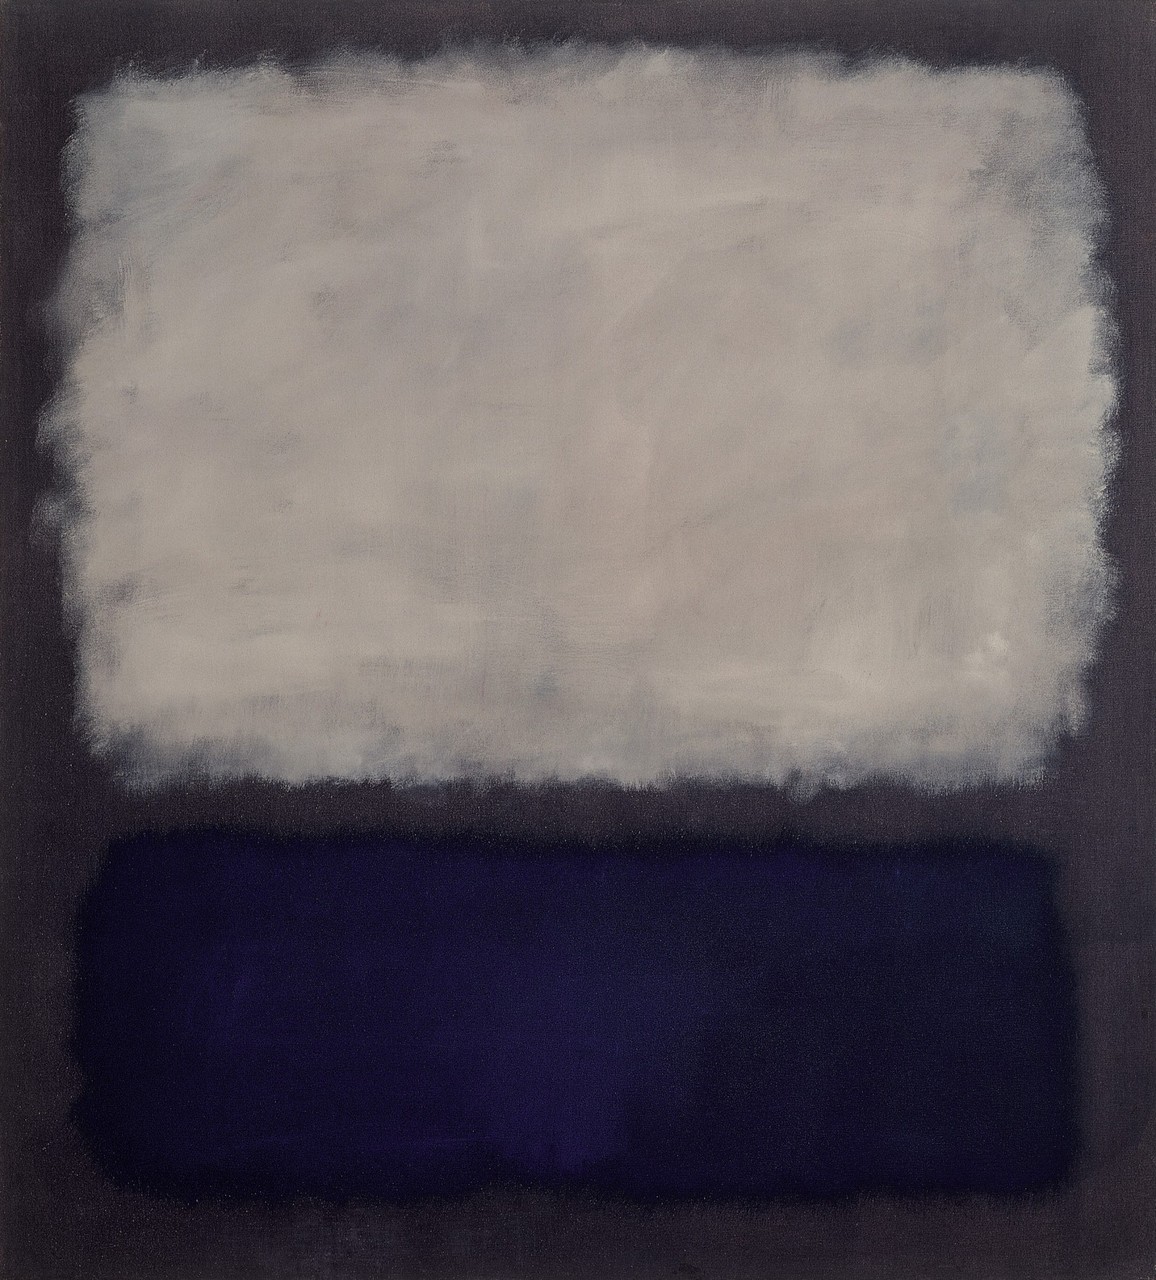 《蓝色和灰色》 by 马克 罗斯科 - 1962年 -  193×175里面 